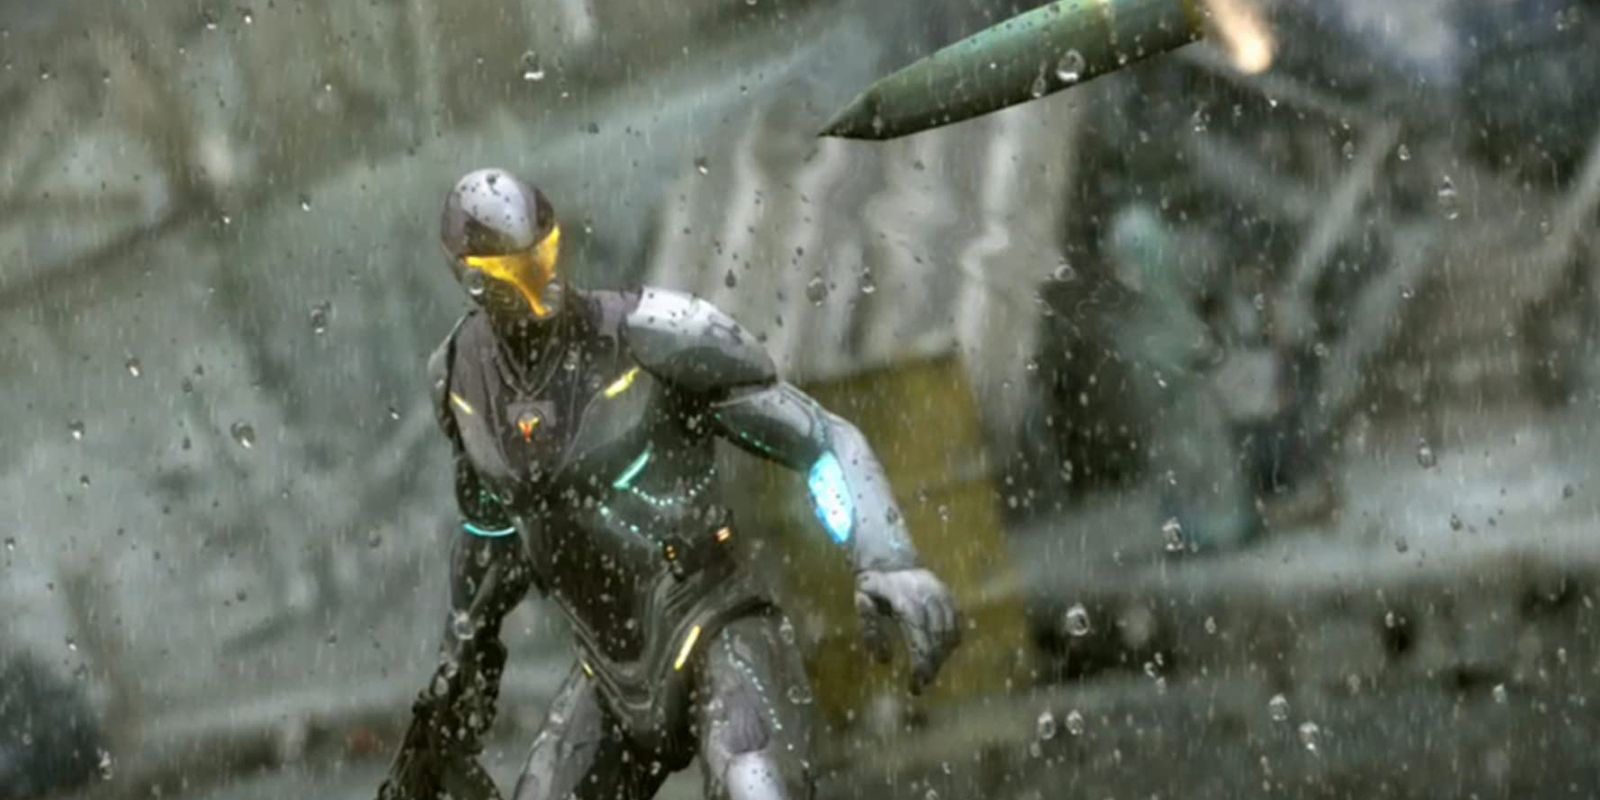 Le personnage de Timeshift debout sous la pluie avec un objet qui vole vers lui